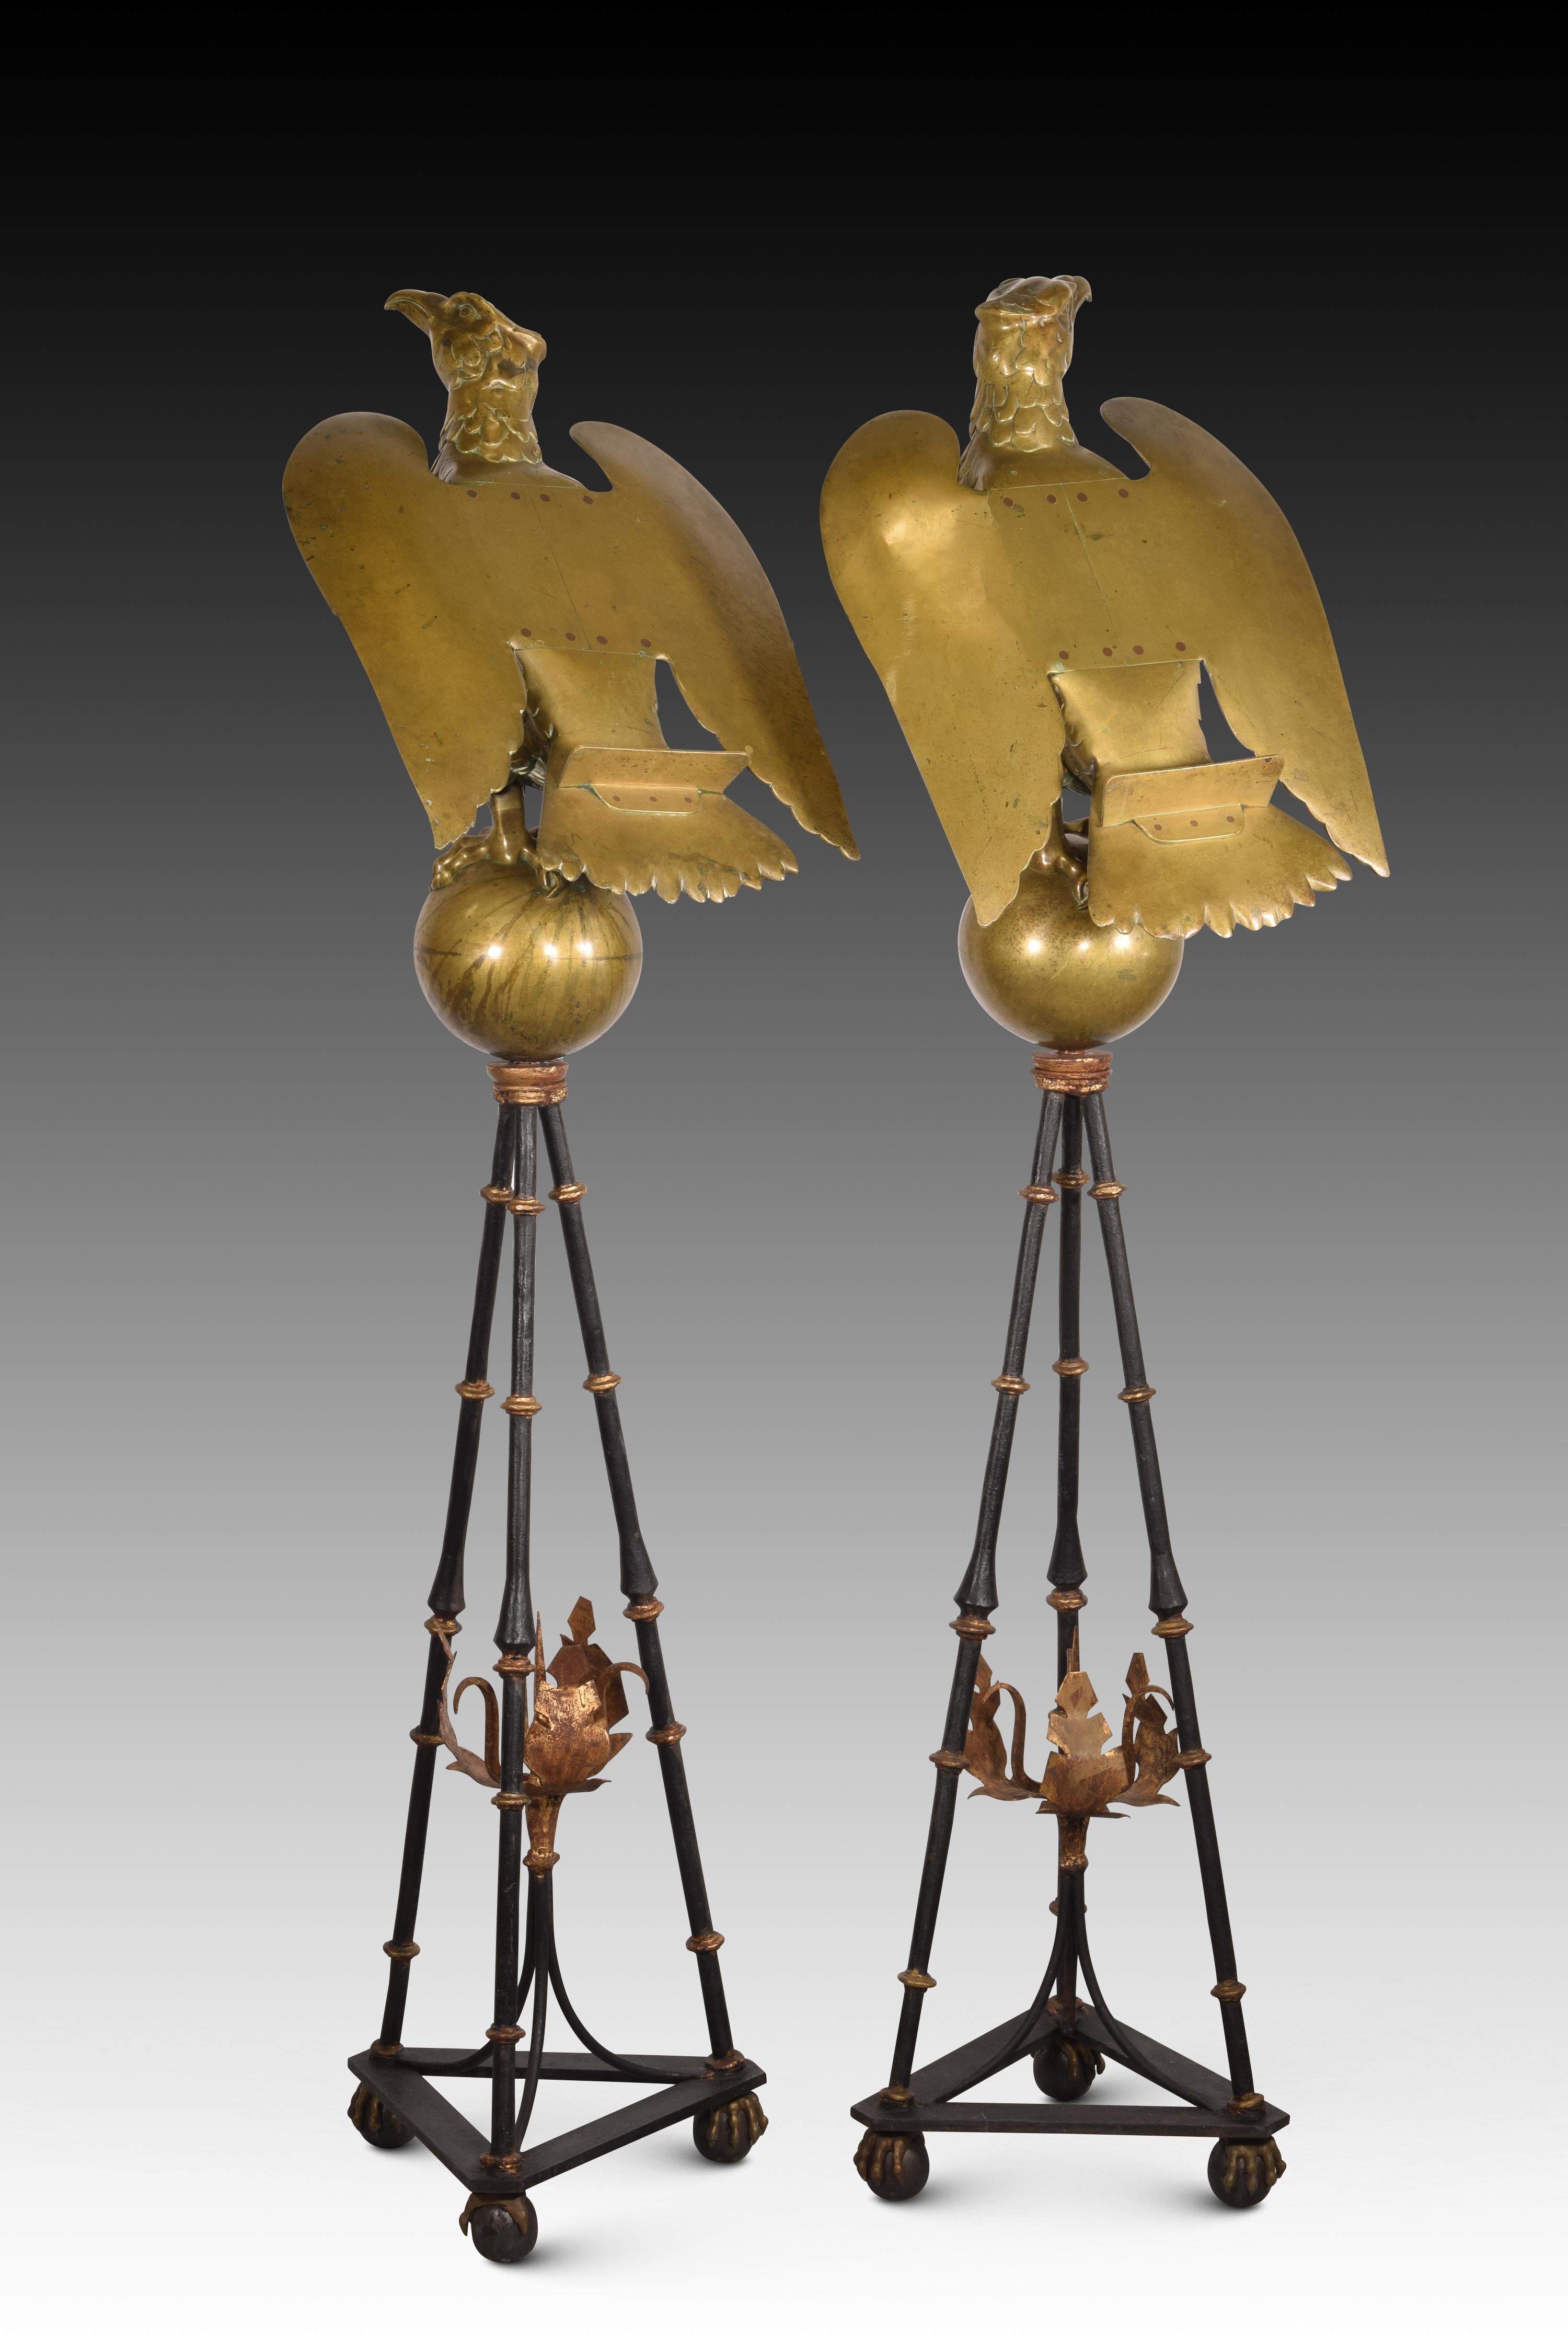 Paire de chevalets en forme d'aigle. Bronze, fer. XVIe-XVIIe siècle.
 Supports arrière. 
Paire de lutrins avec des bases en forme de trépied, des pieds en forme de griffe avec des sphères, et une partie triangulaire d'où émergent trois pieds en